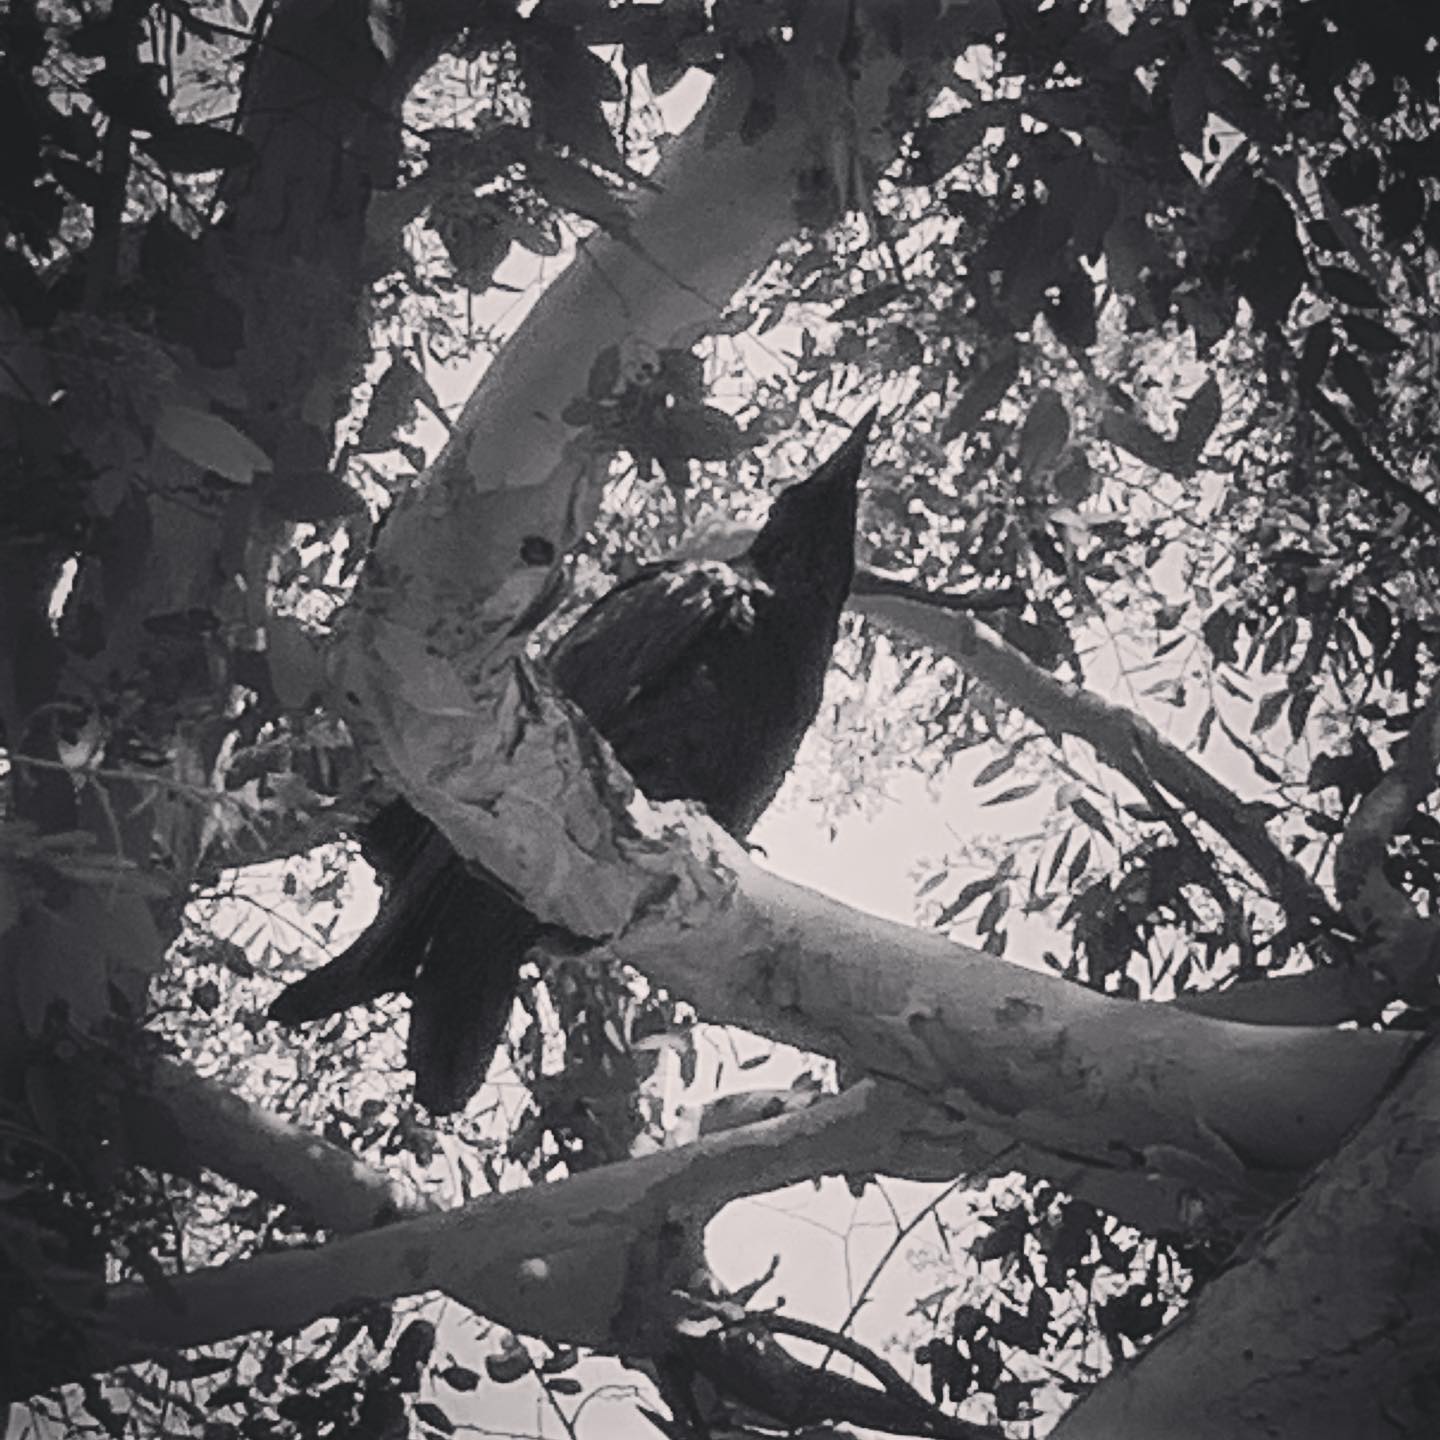 My Los Angeles 14 – Magnolia Park via Instagram